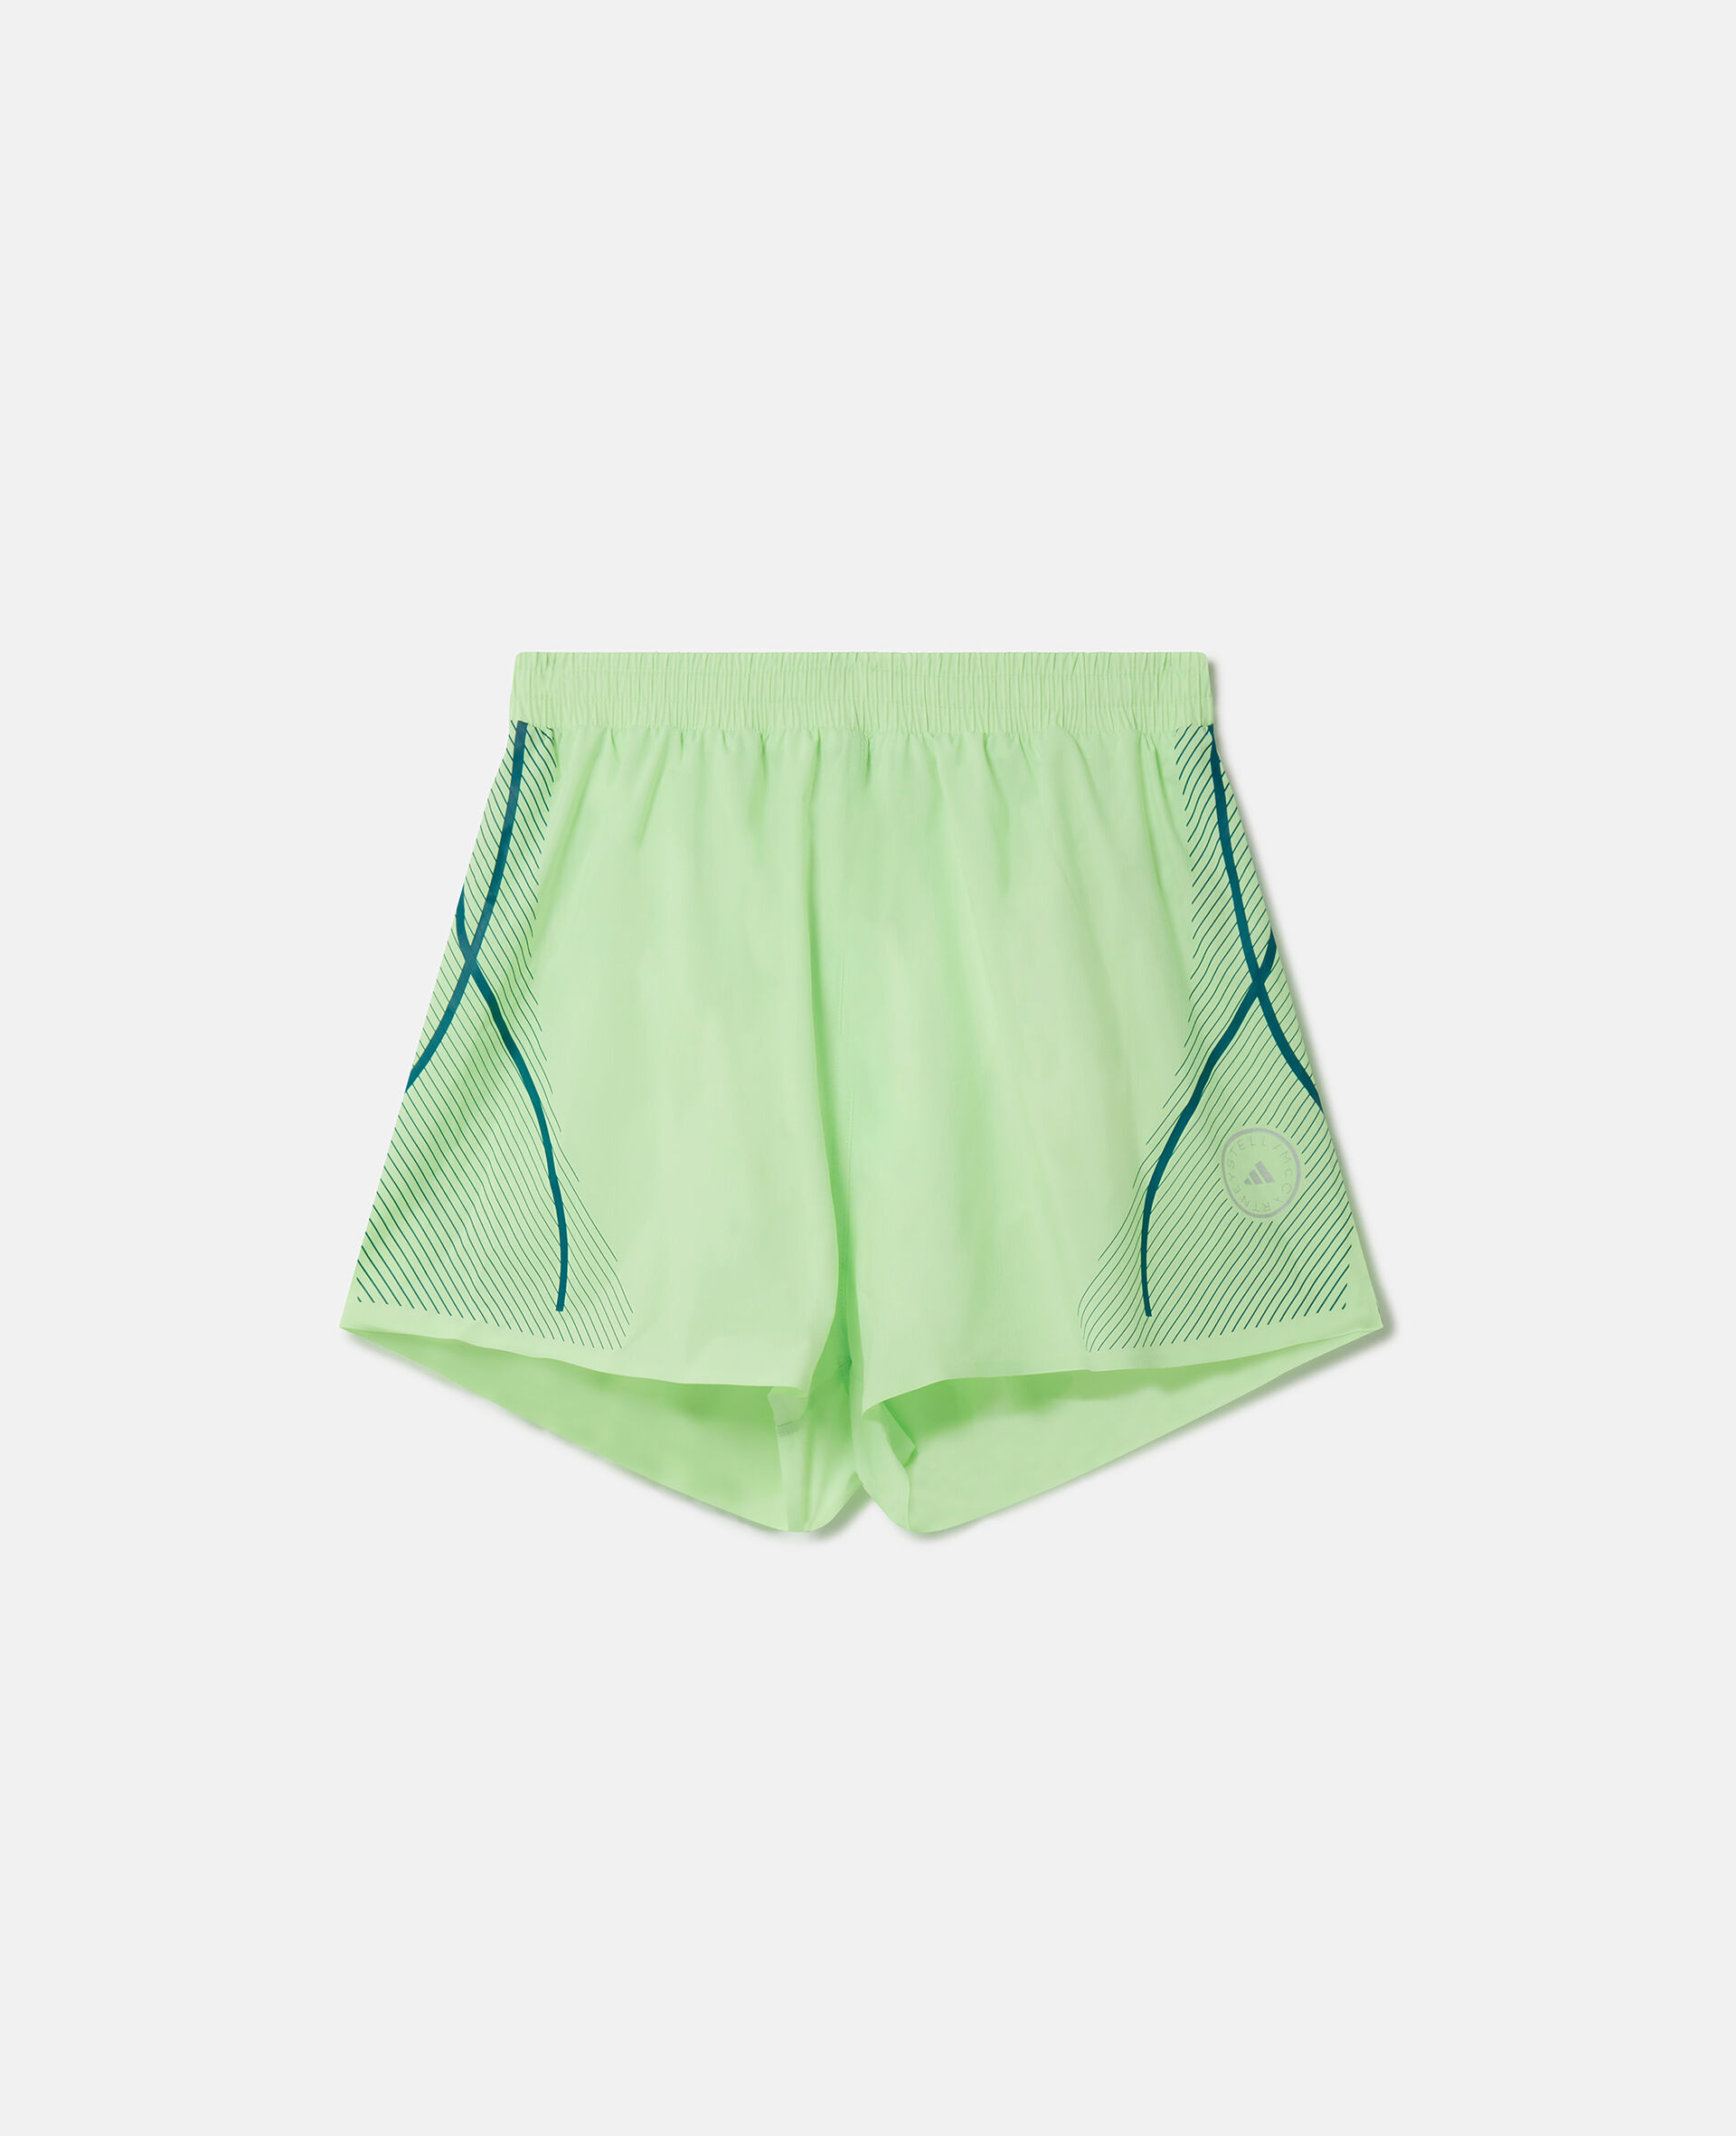 TruePace Running Shorts-Green-medium